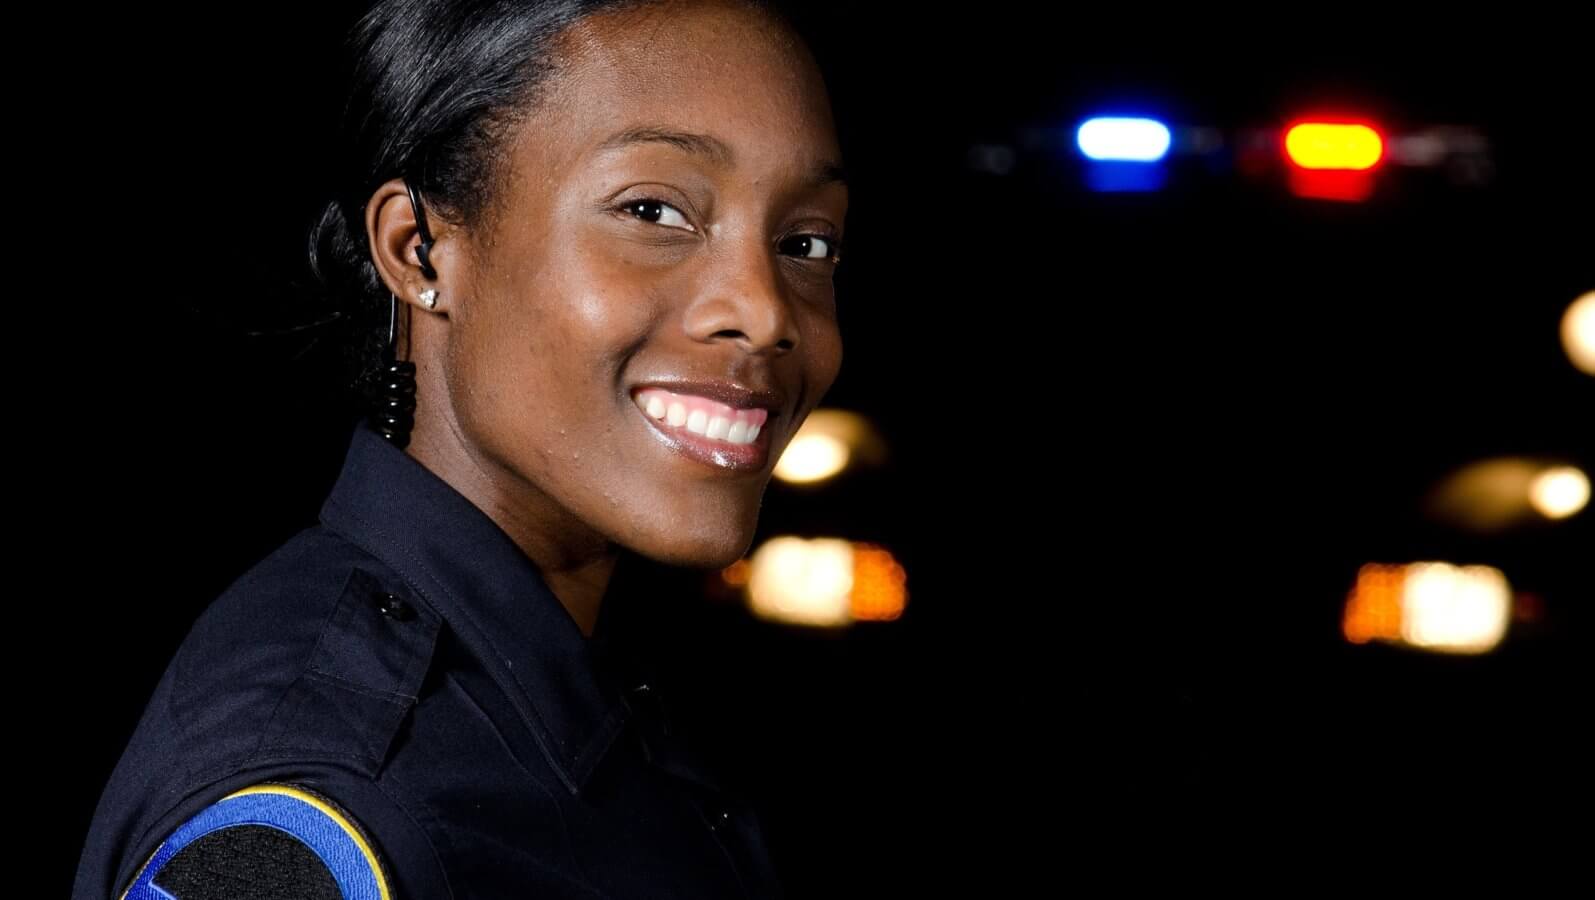 Female_police_officer